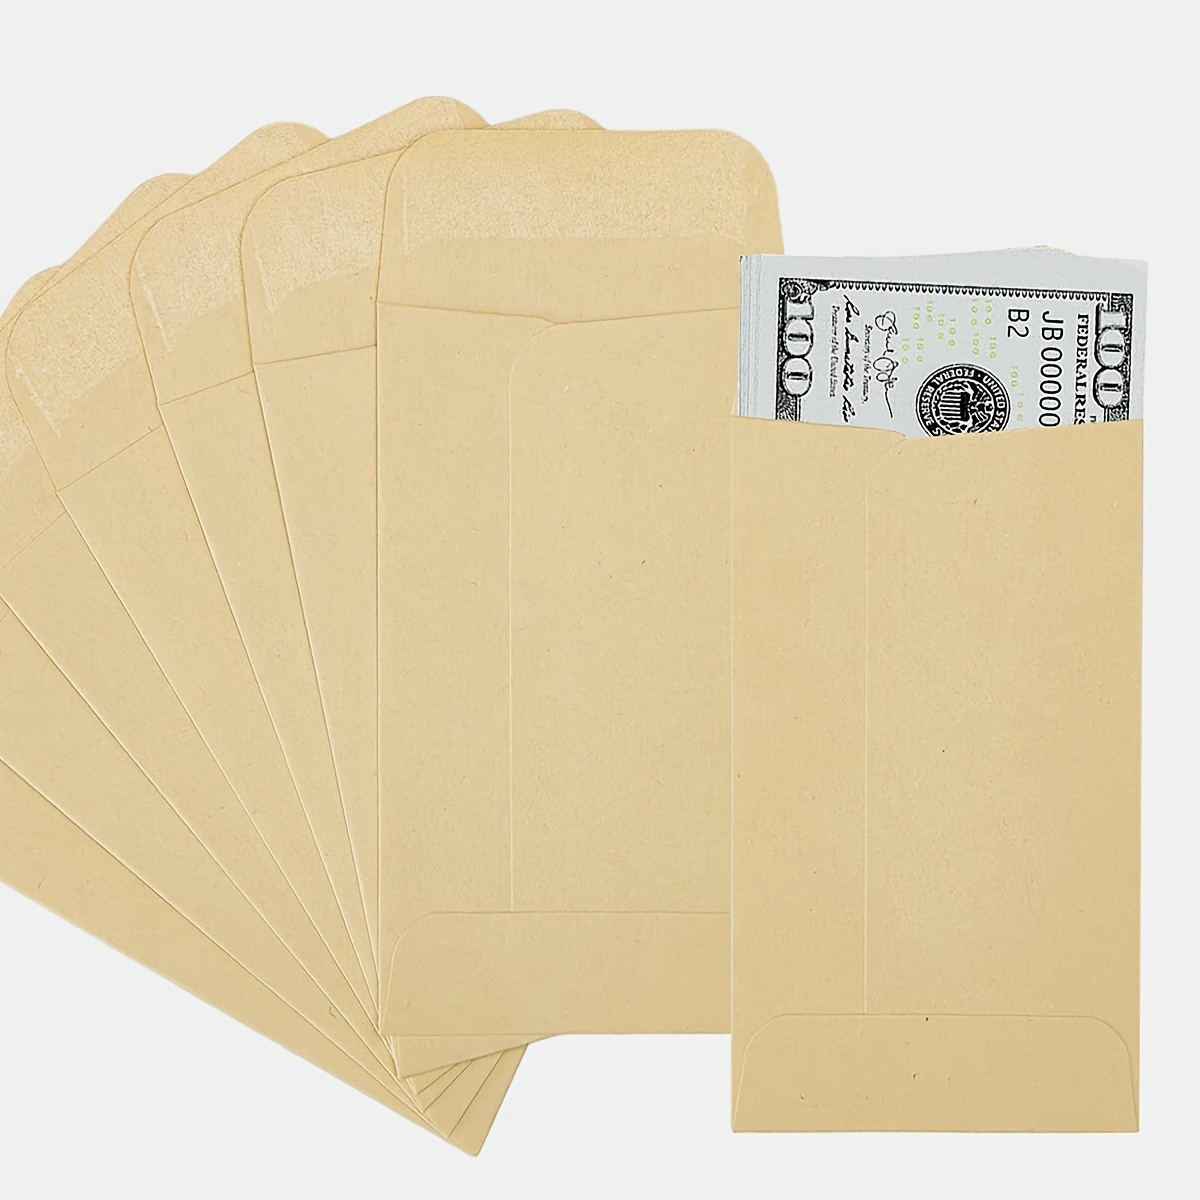  100 Pcs Glassine Envelopes Tissue Seed Envelopes Coin